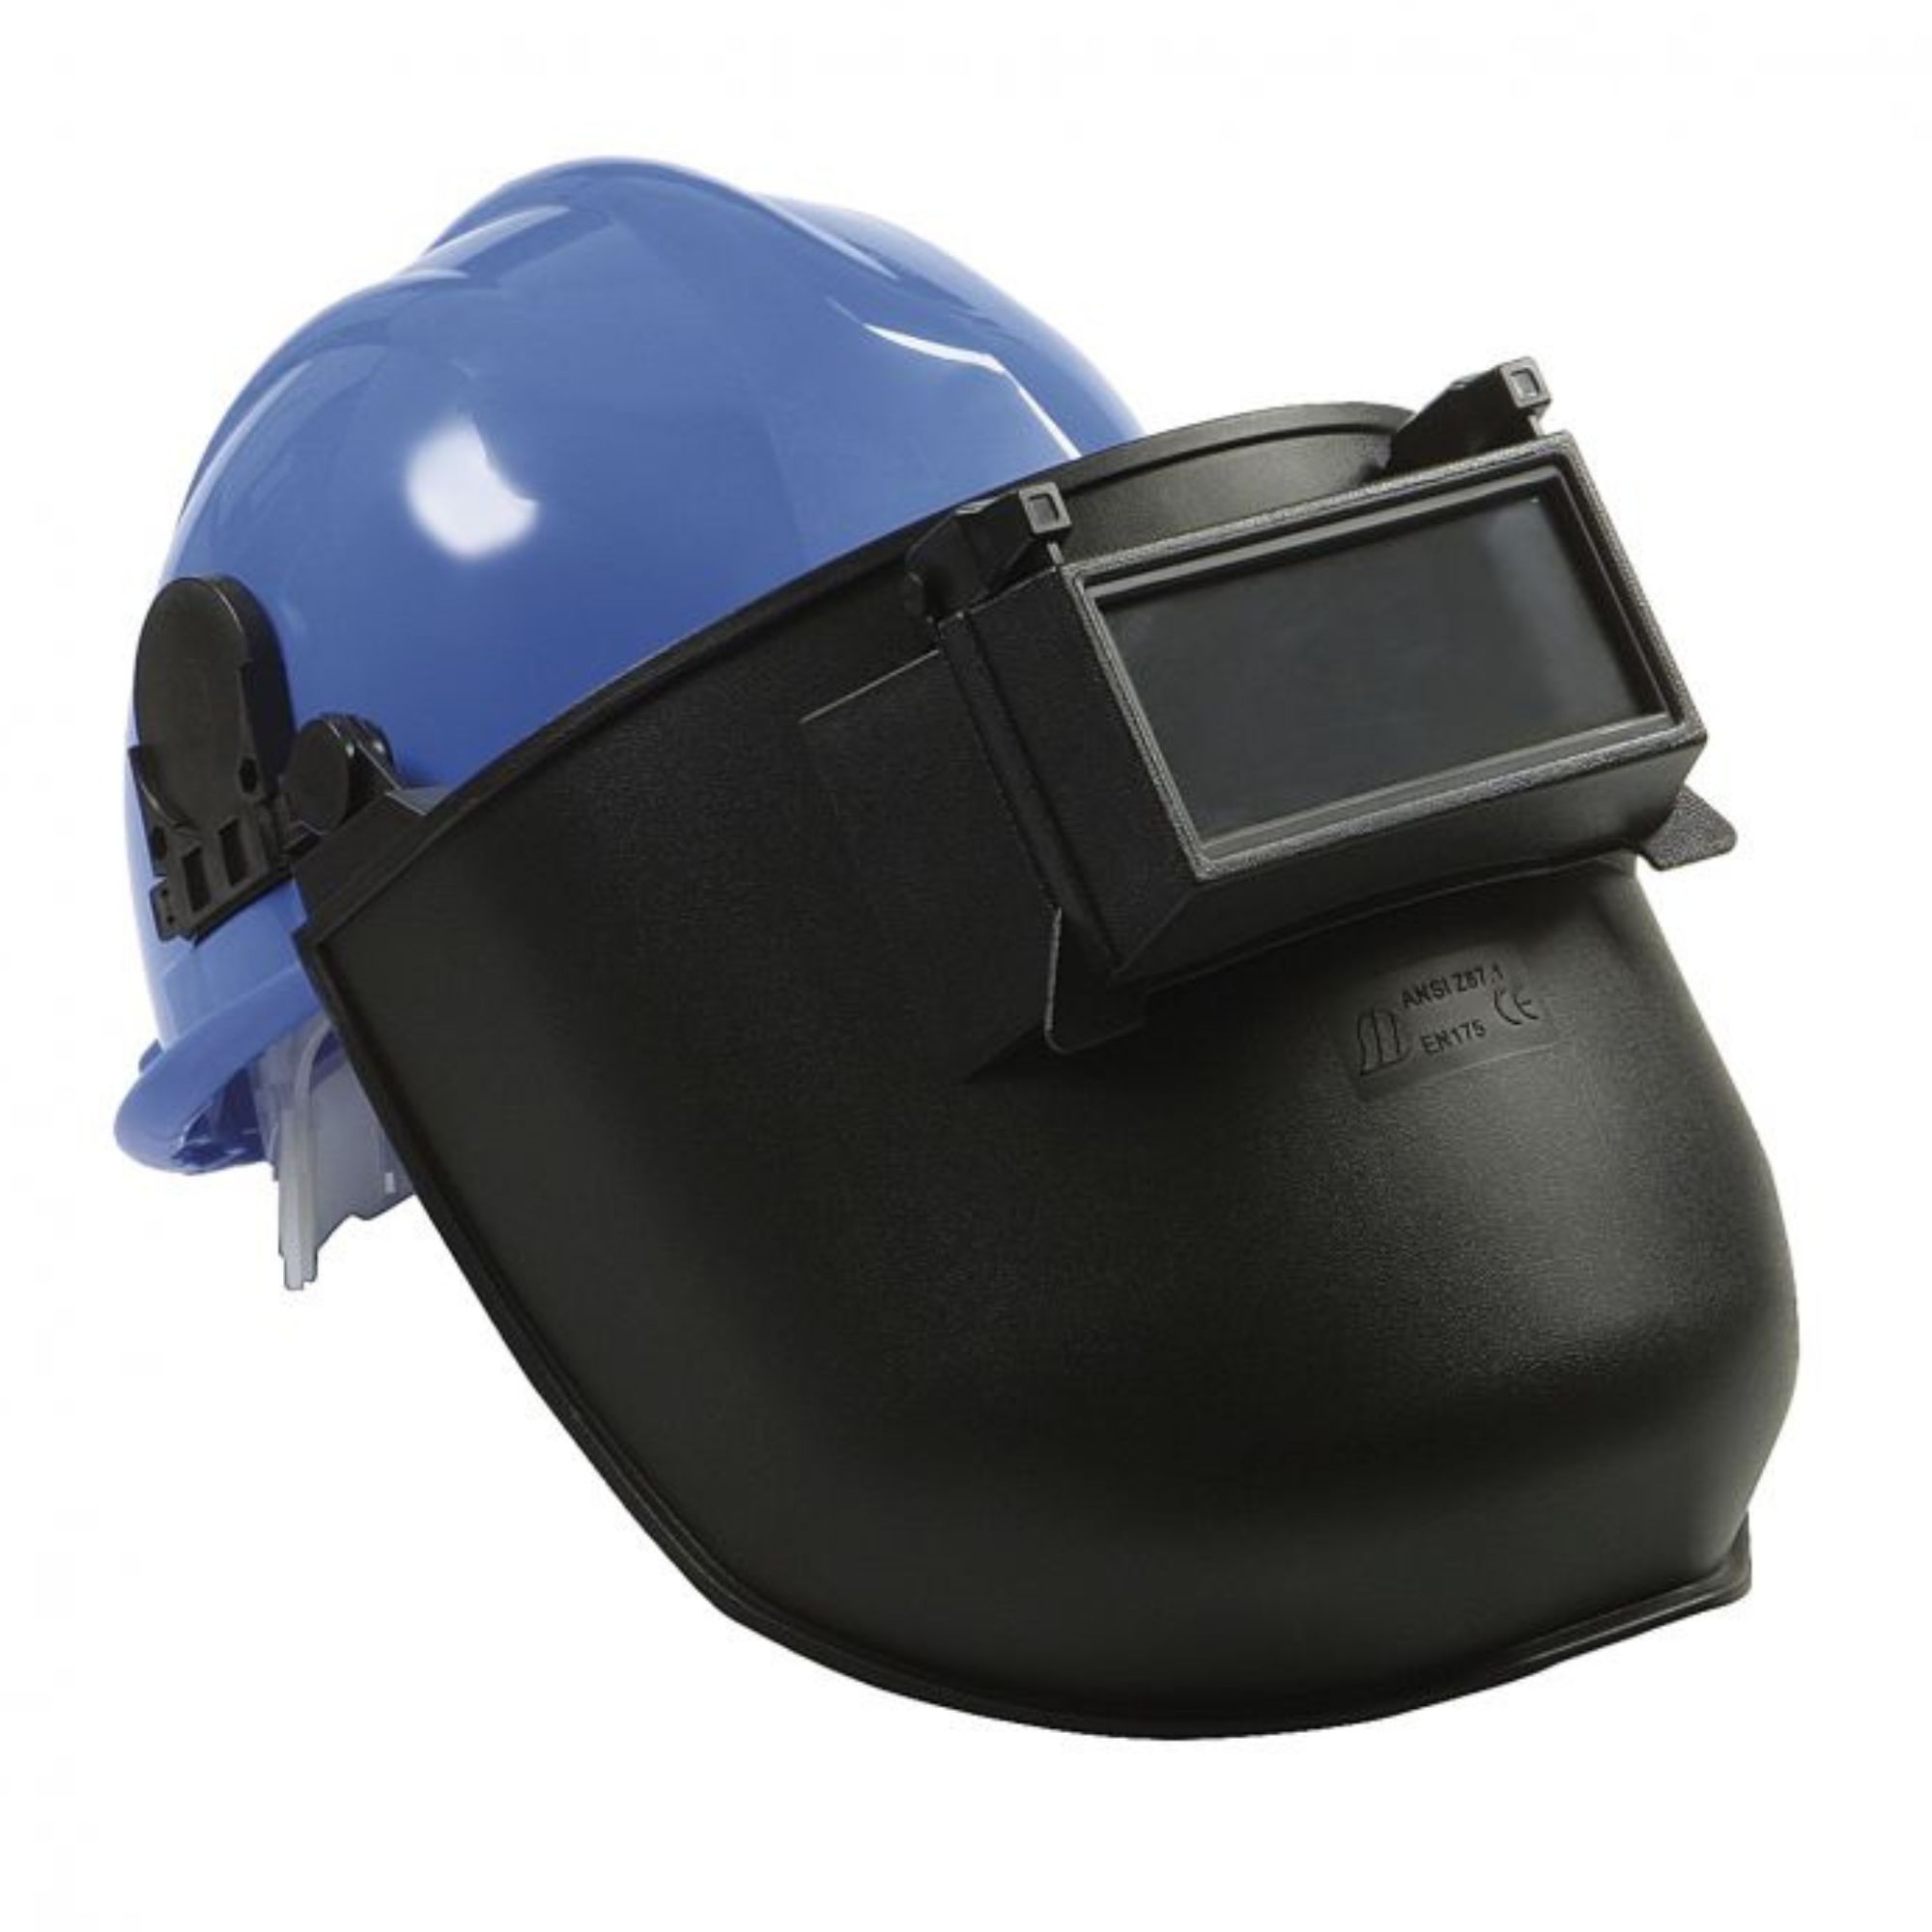 Mascara capacete soldadura 13530 Amig